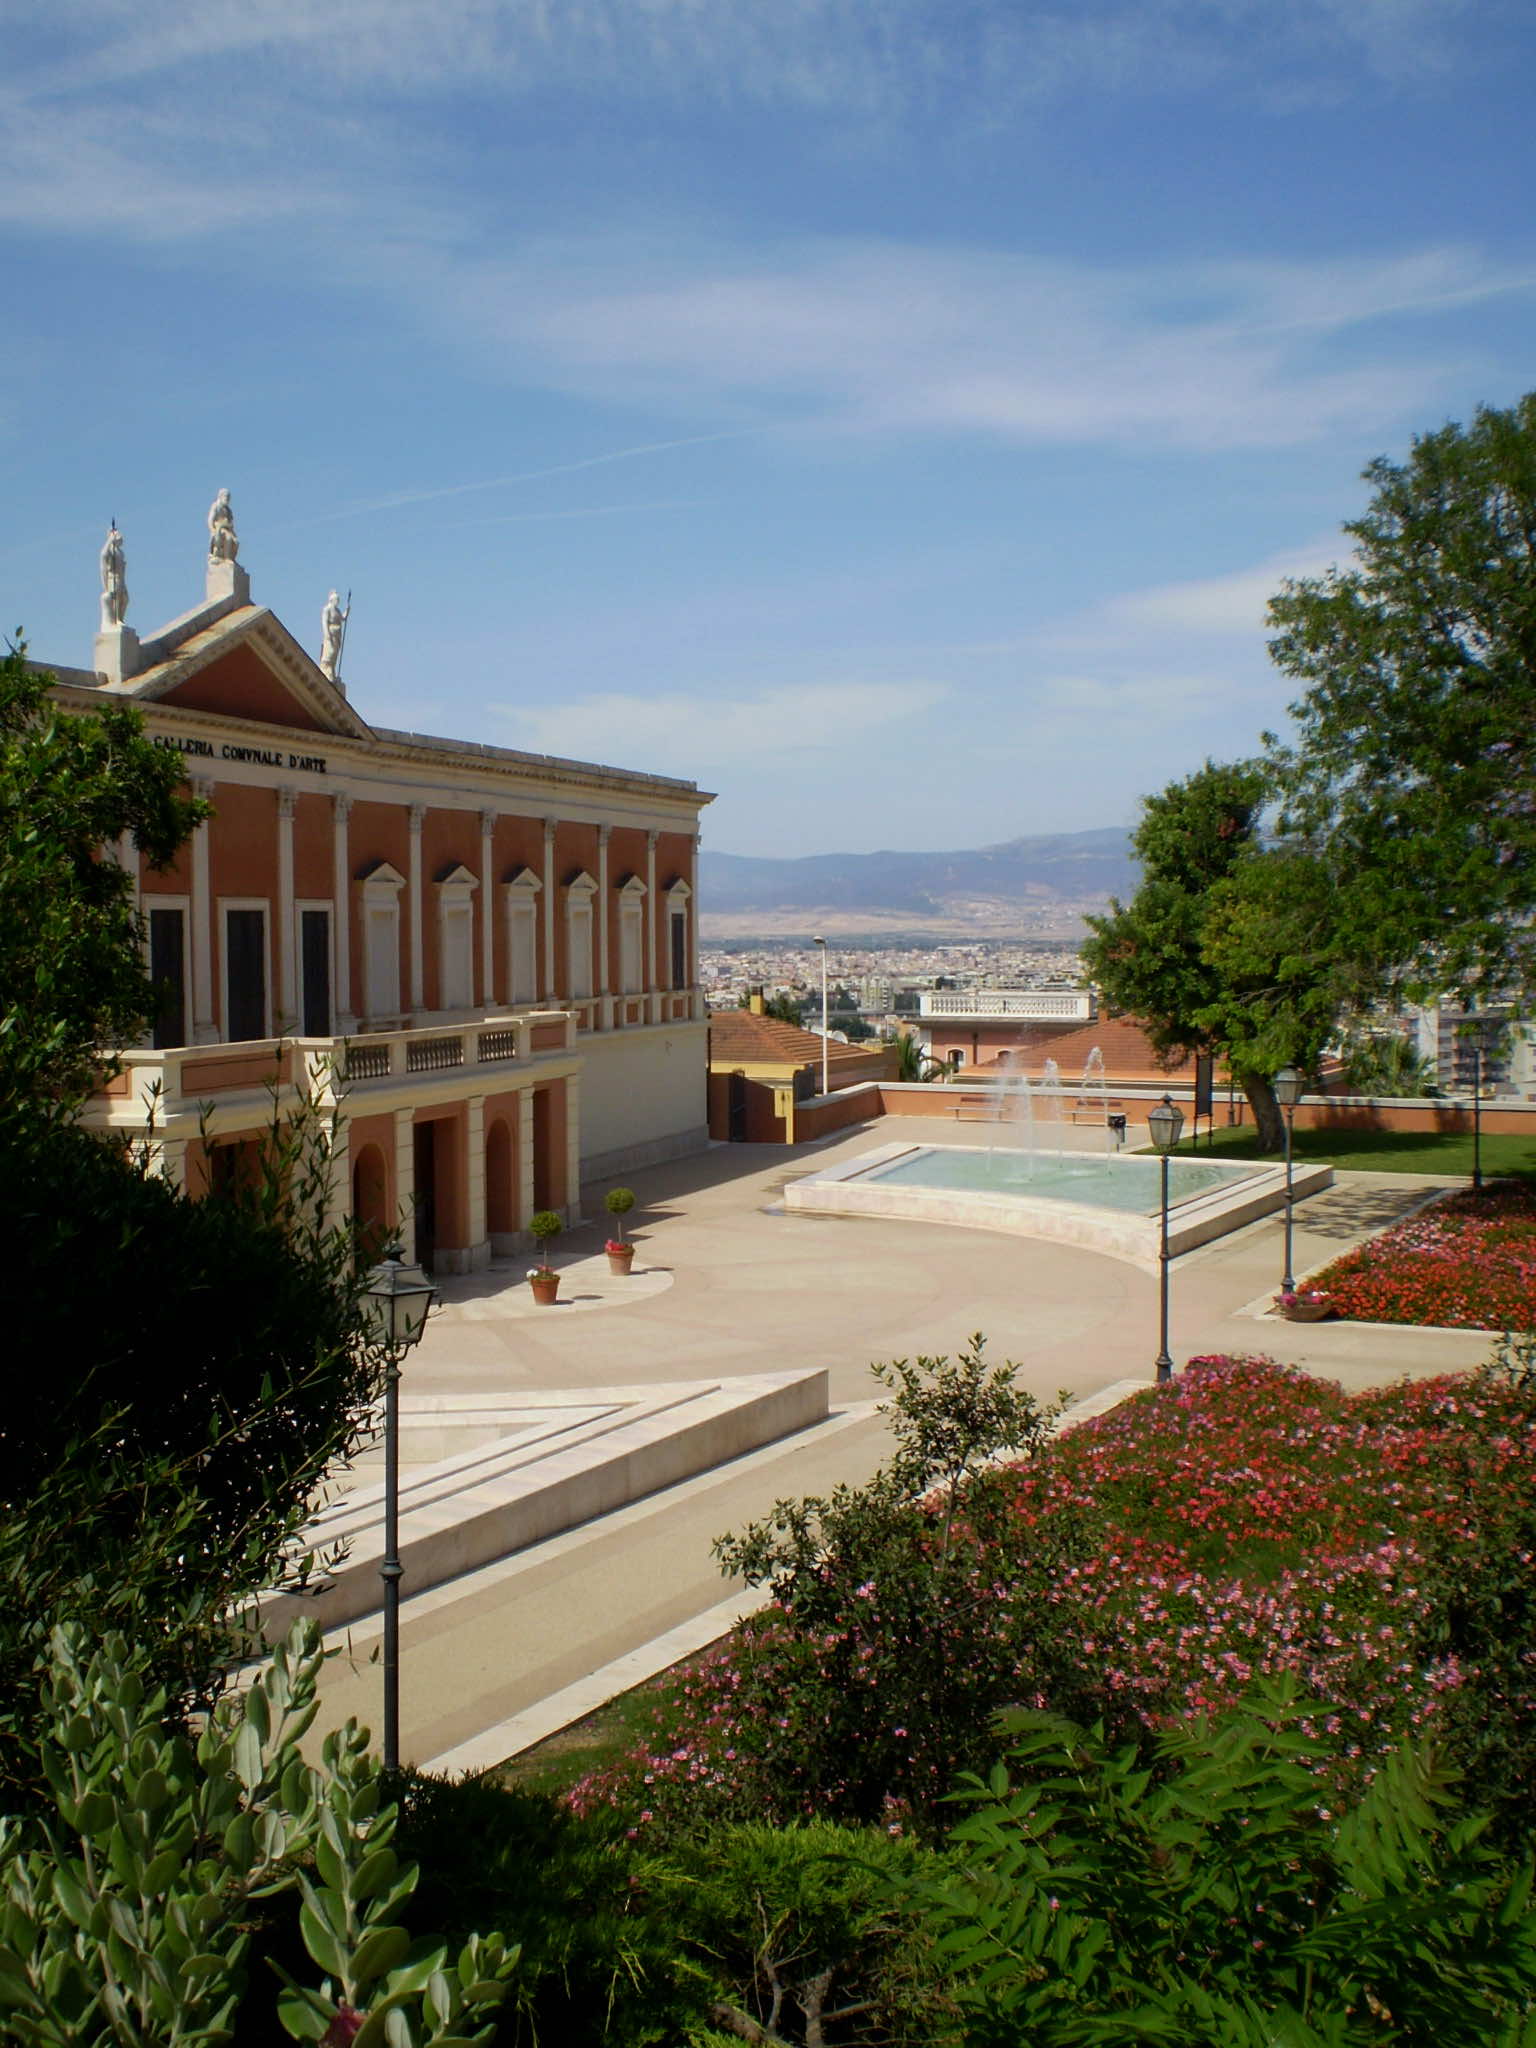 Giardini pubblici galleria d'arte Cagliari